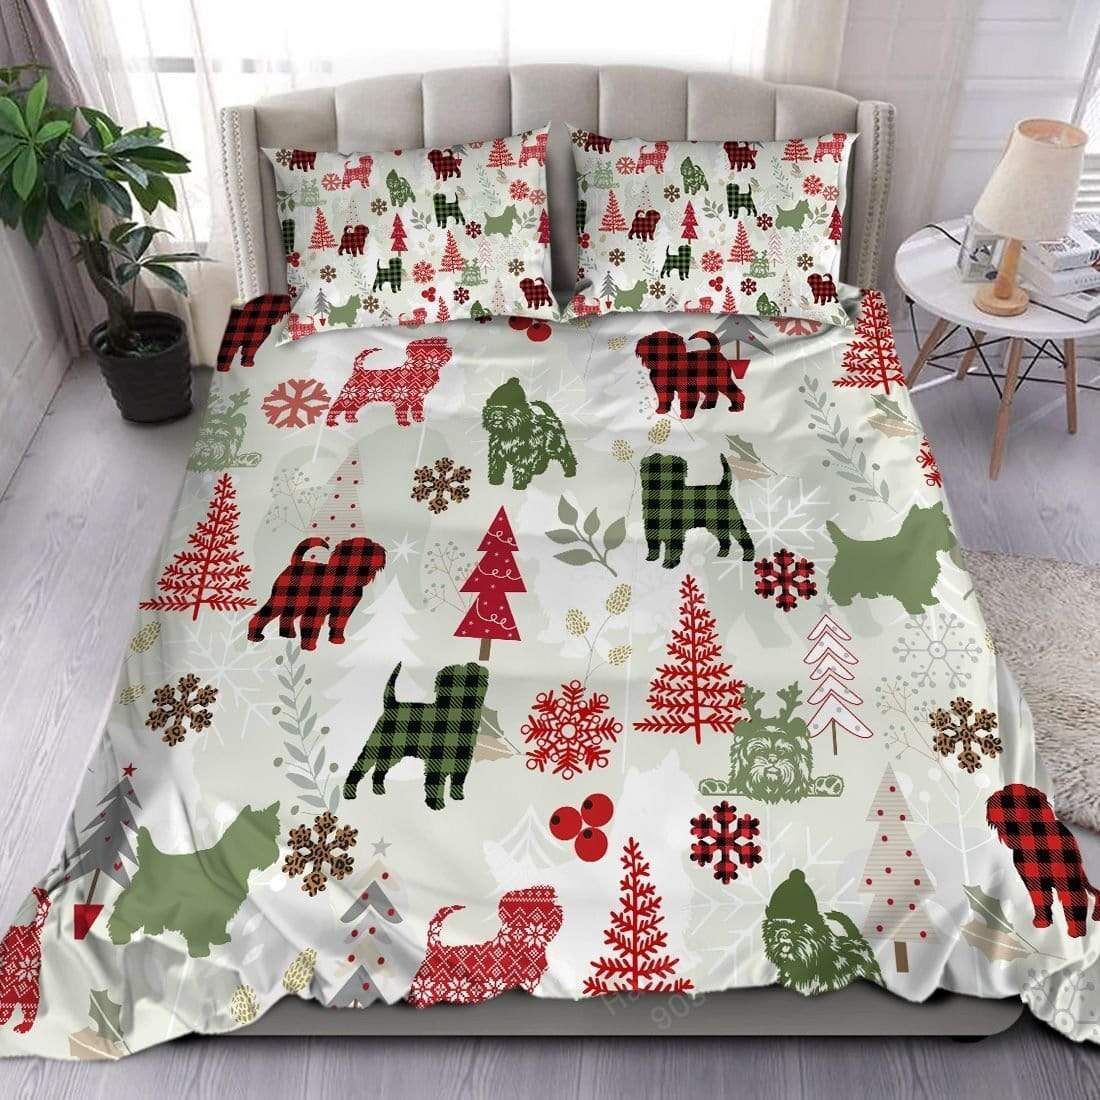 Affenpinscher Dog Christmas Duvet Cover Bedding Set